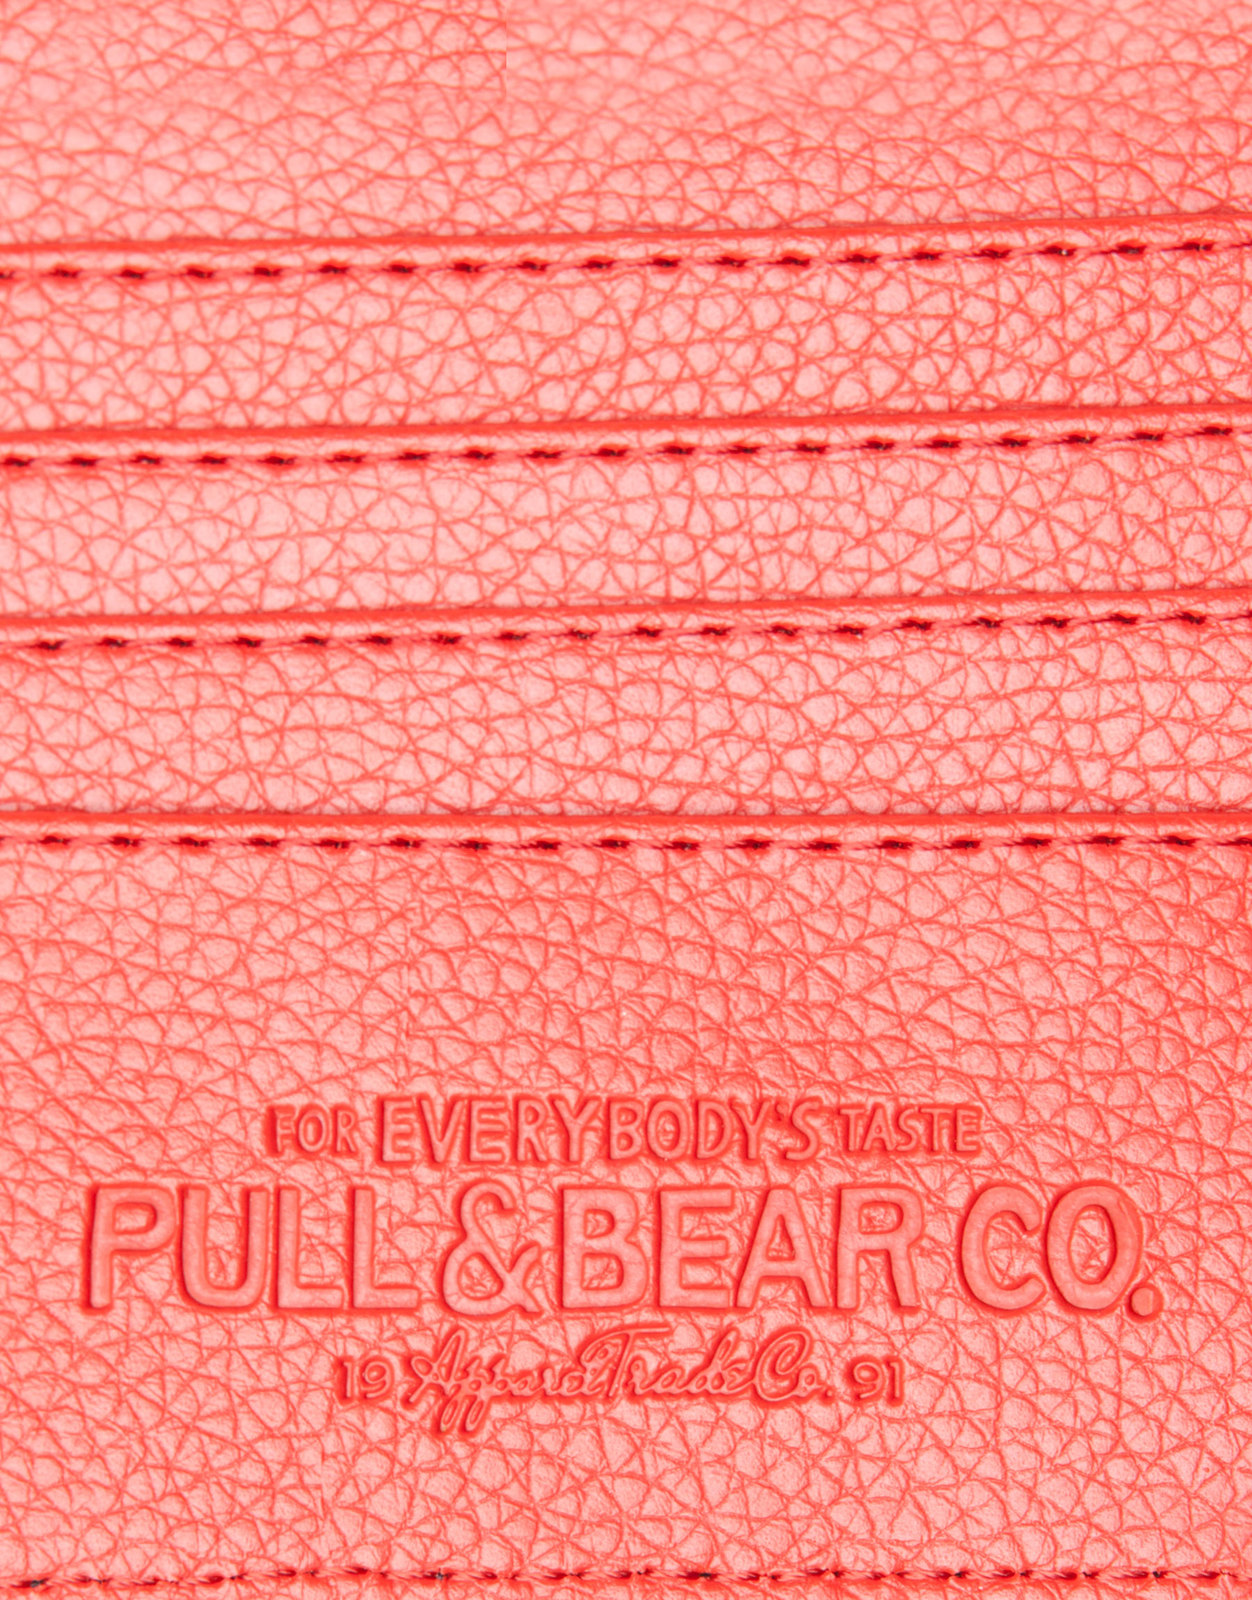 Pull and Bear férfi pénztárca 2013.3.18 fotója